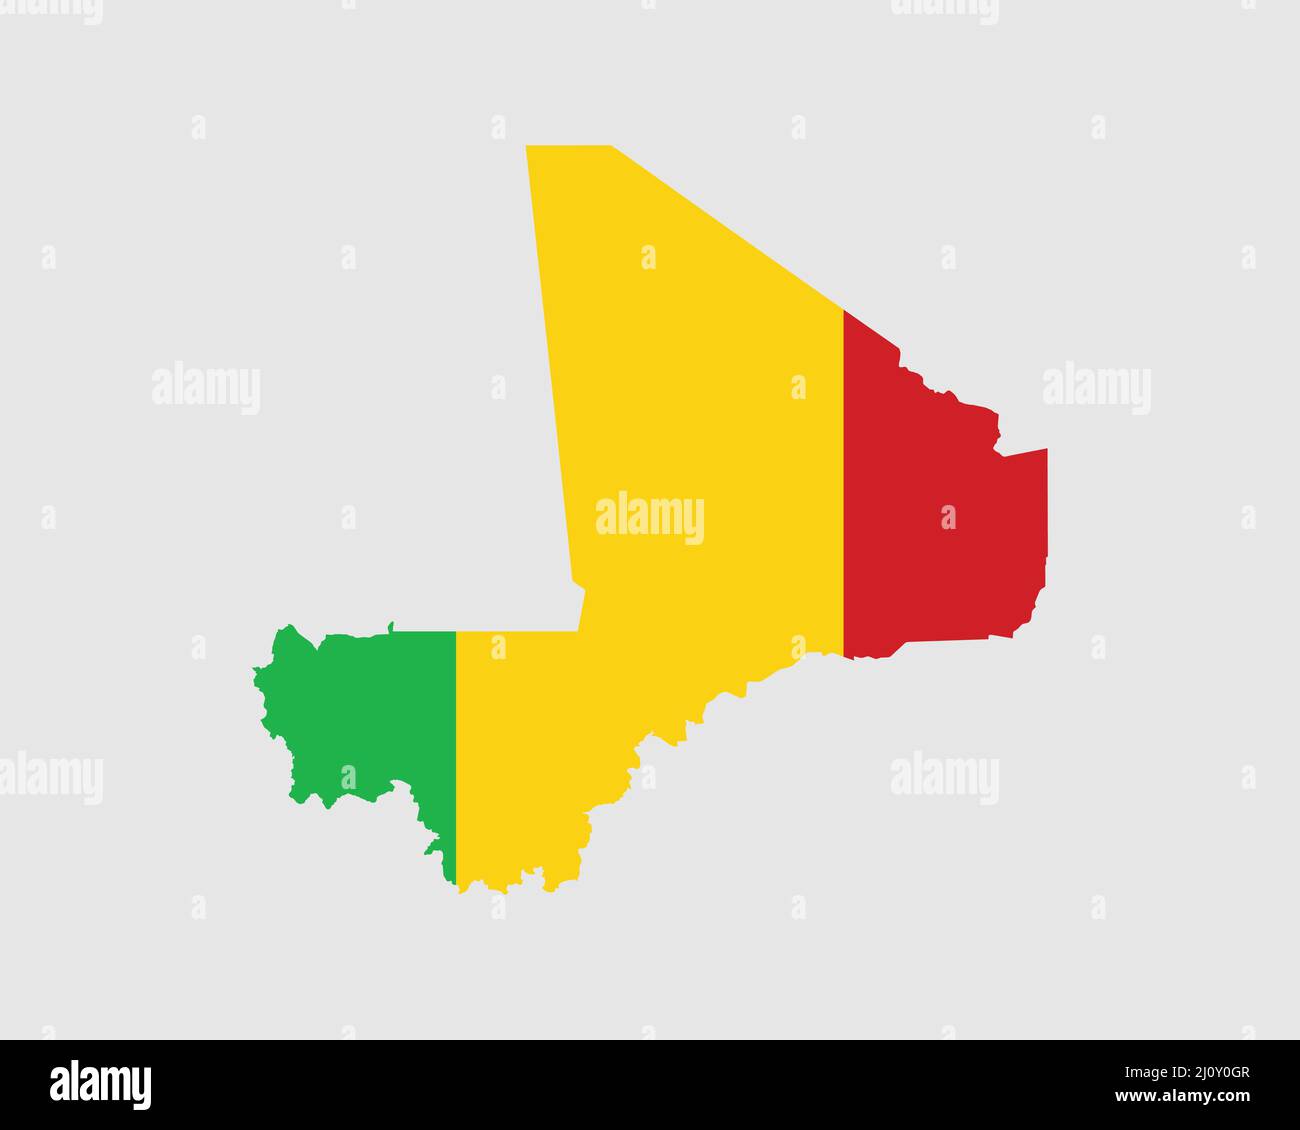 Mali man : plus de 189 images vectorielles de stock libres de droits  proposées sous licence